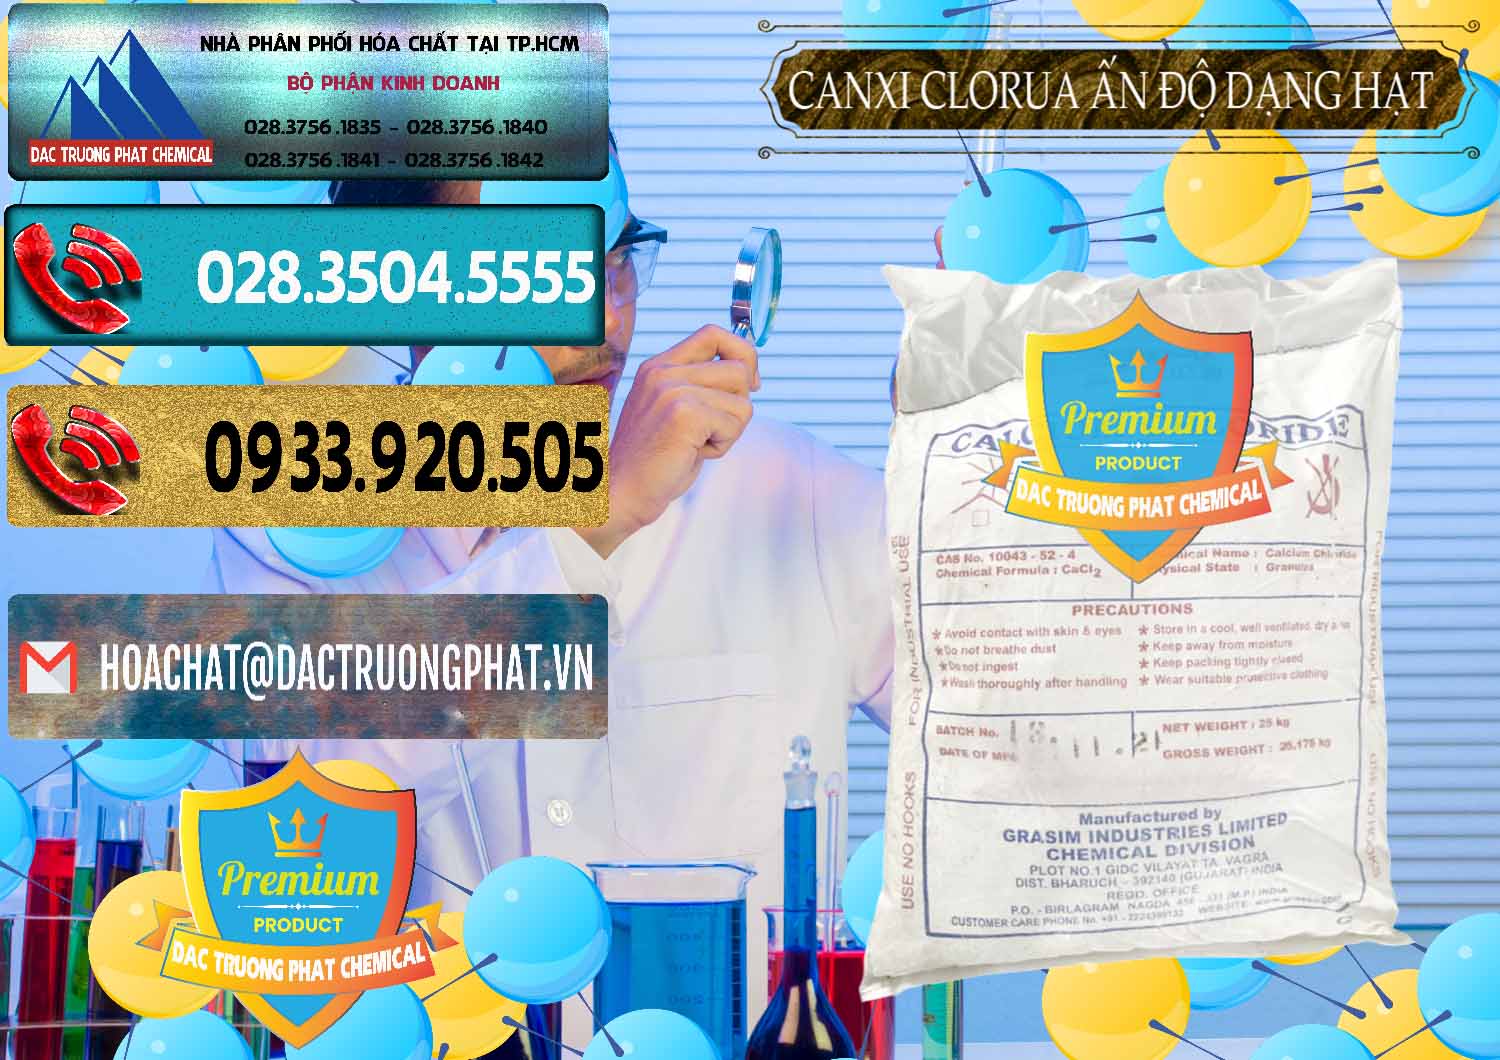 Nơi chuyên cung cấp và bán CaCl2 – Canxi Clorua Dạng Hạt Aditya Birla Grasim Ấn Độ India - 0418 - Nhà phân phối & cung cấp hóa chất tại TP.HCM - hoachatdetnhuom.com